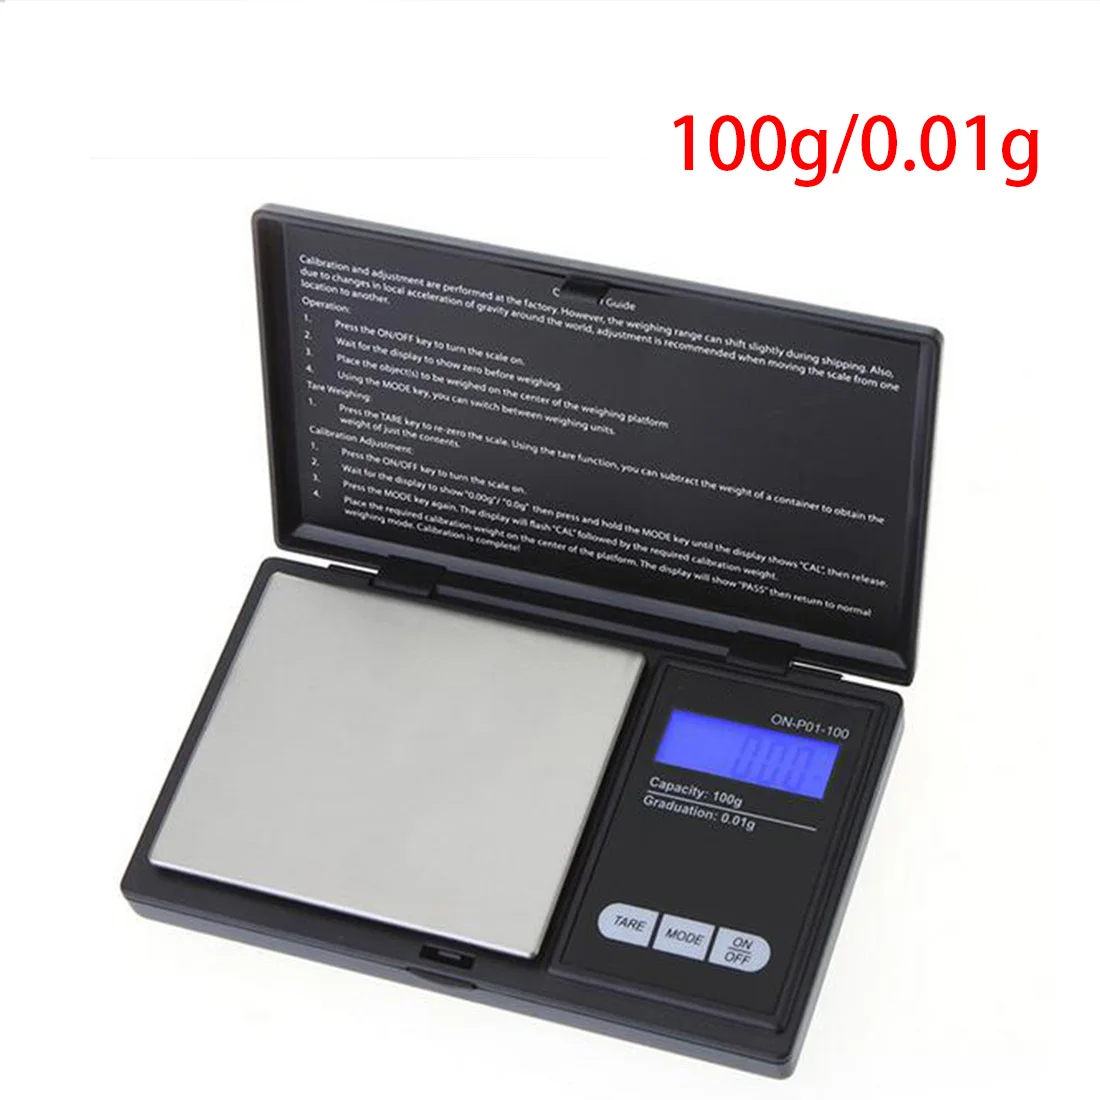 Лучшие продажи практичная раскладушка точные ювелирные весы цифровые весы ЖК-дисплей мини электронные карманные весы - Цвет: 100g